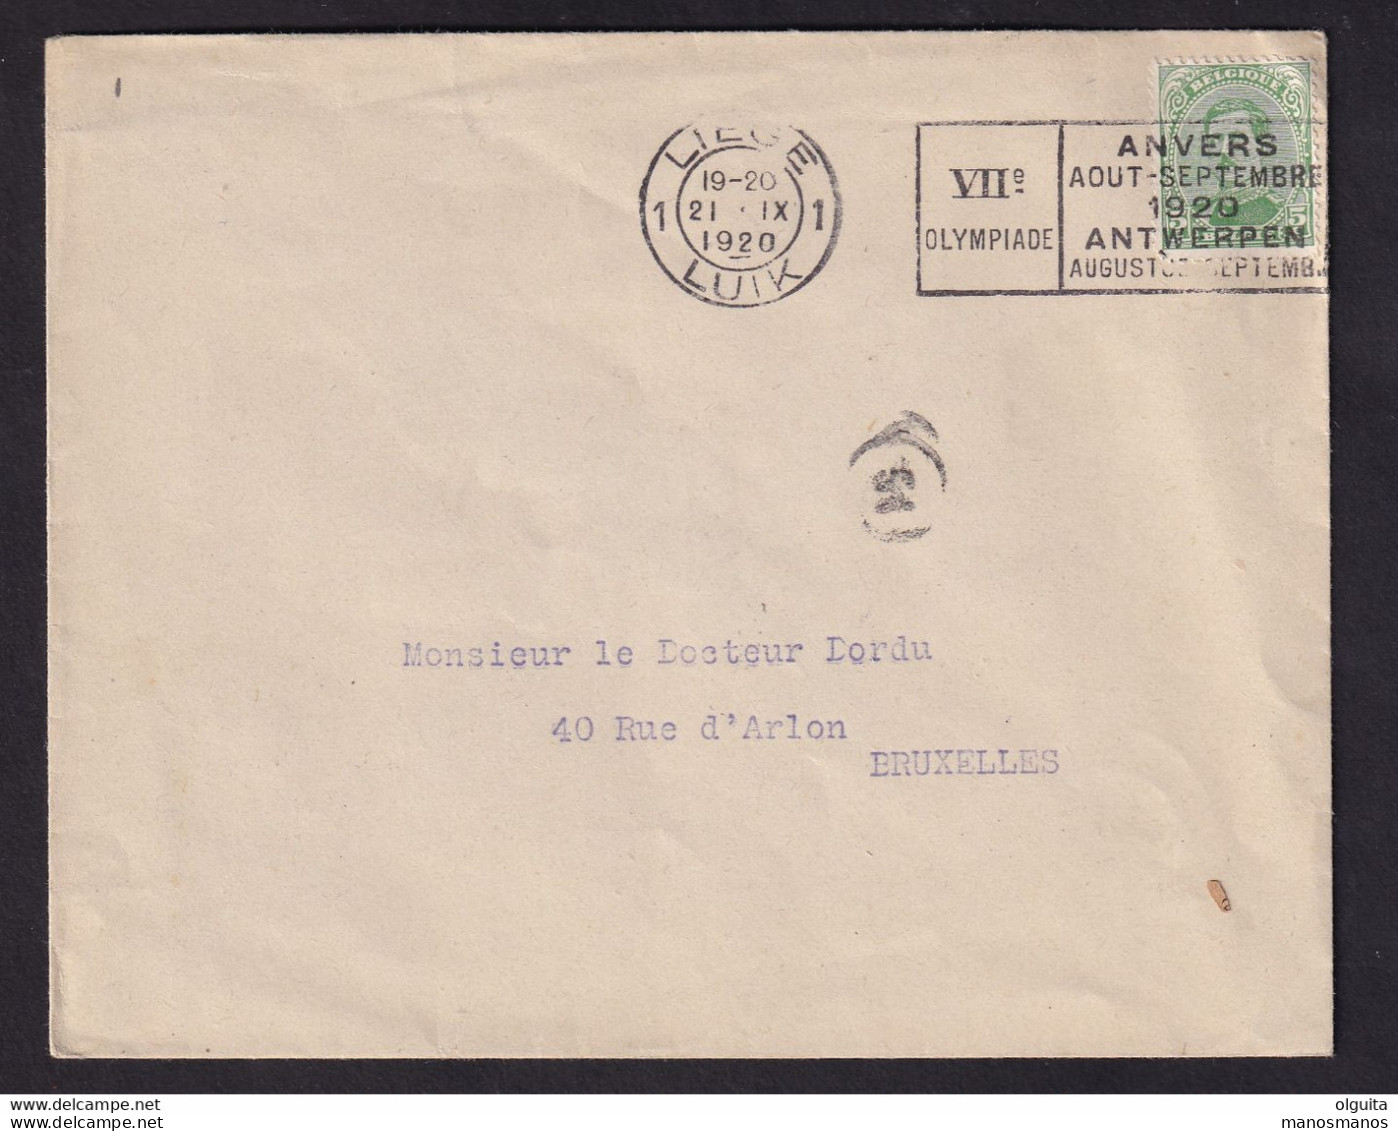 DDCC 348 -- LES IMPRIMES - Enveloppe Ouverte TP Albert 5 C - Cachet Mécanique LIEGE 1 Jeux Olympiques 1920 - Verano 1920: Amberes (Anvers)